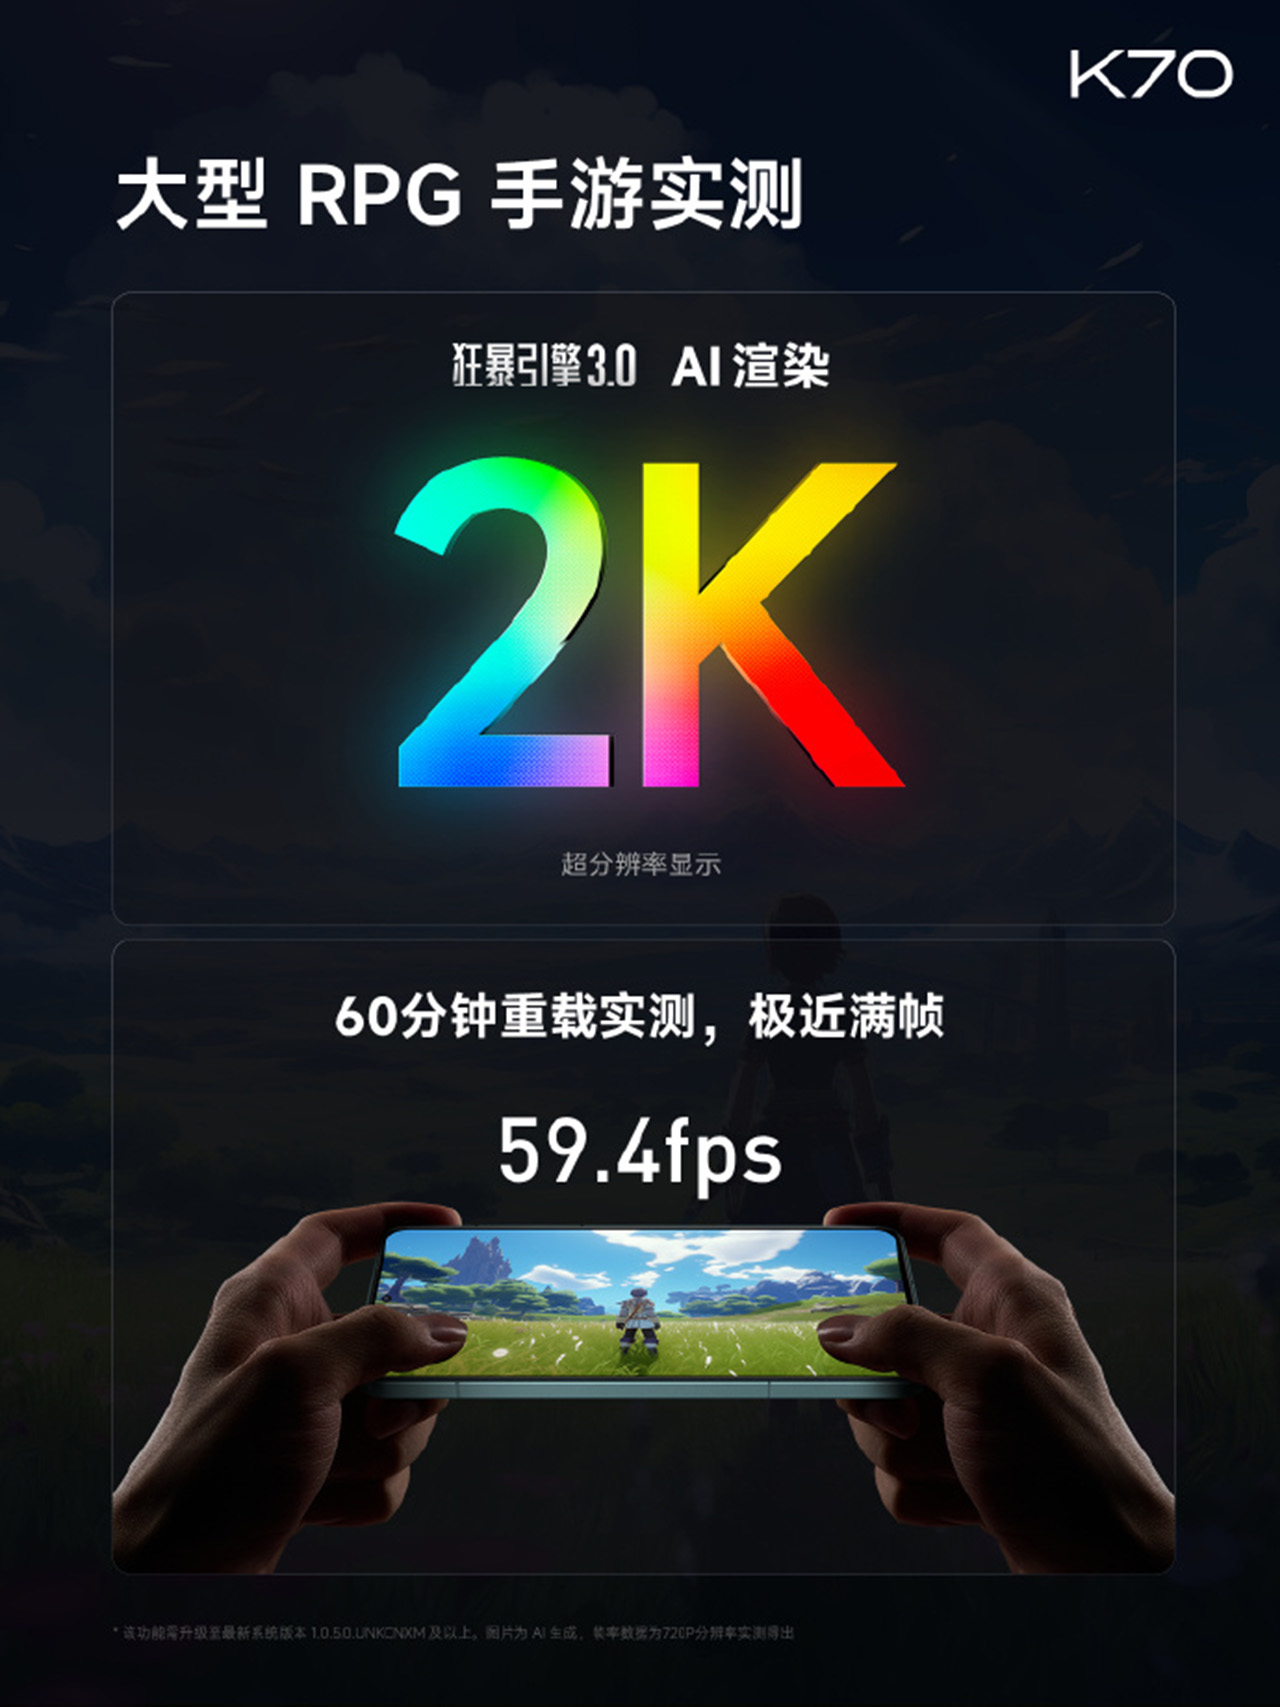 Redmi K70 được trang bị màn hình OLED với độ phân giải 2K